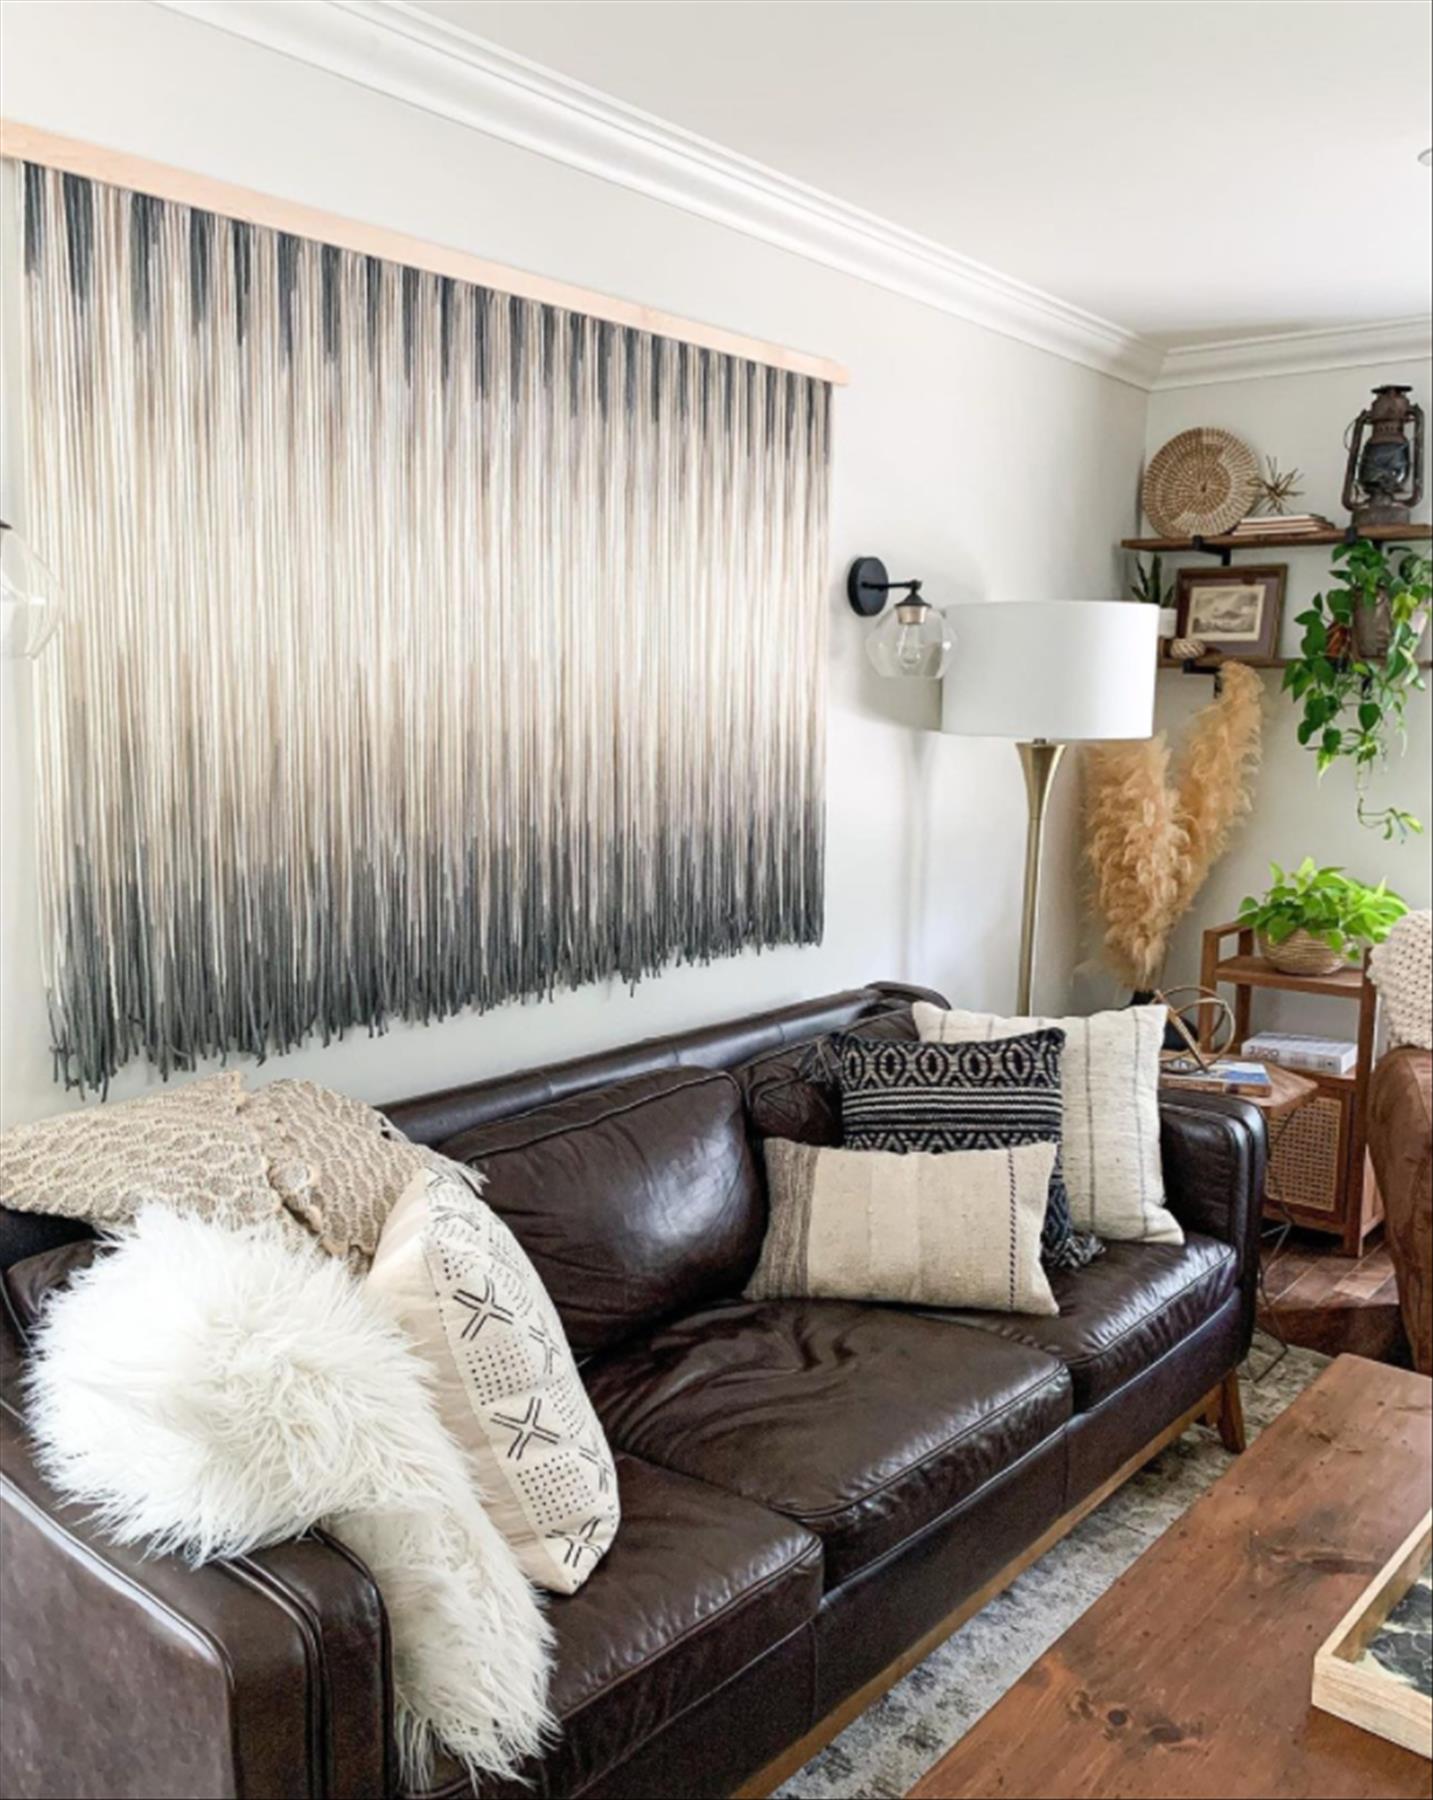 Cozy Winter Living room decor ideas trending now